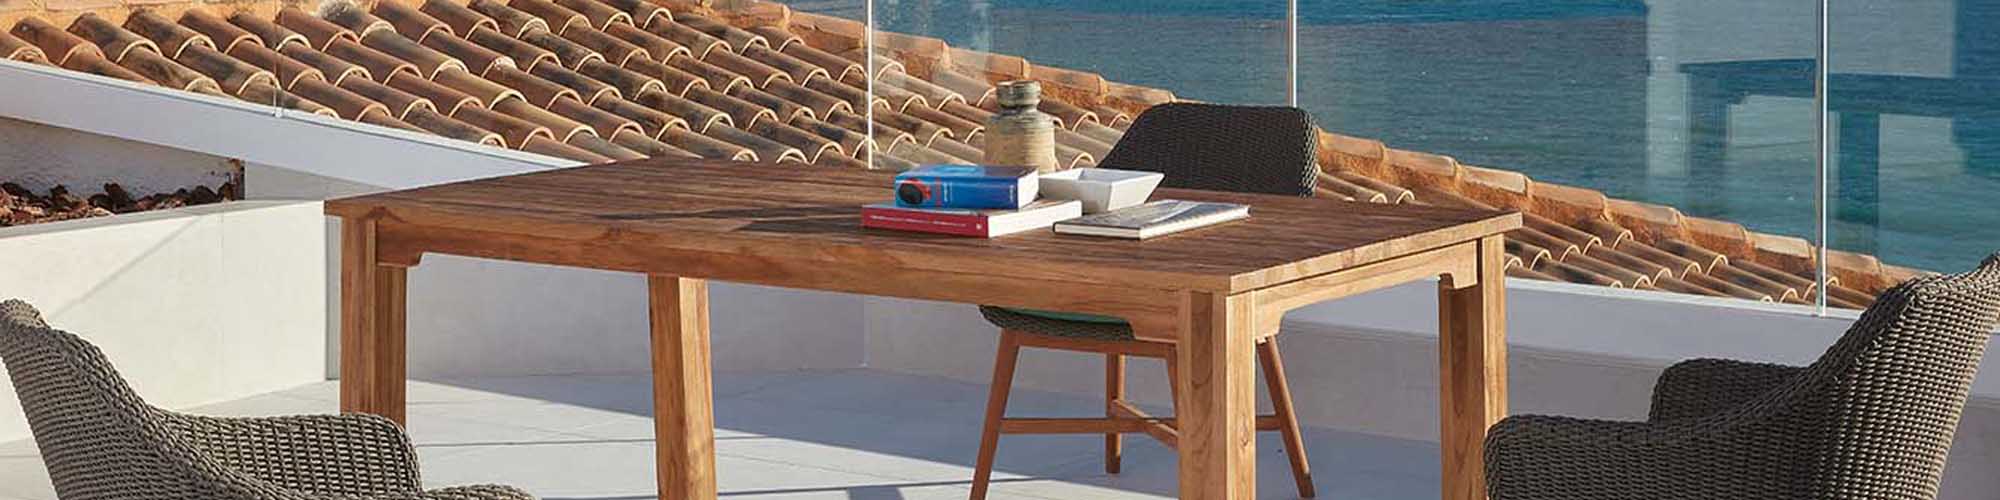 Escoge los mejores muebles de terraza siguiendo estos tips